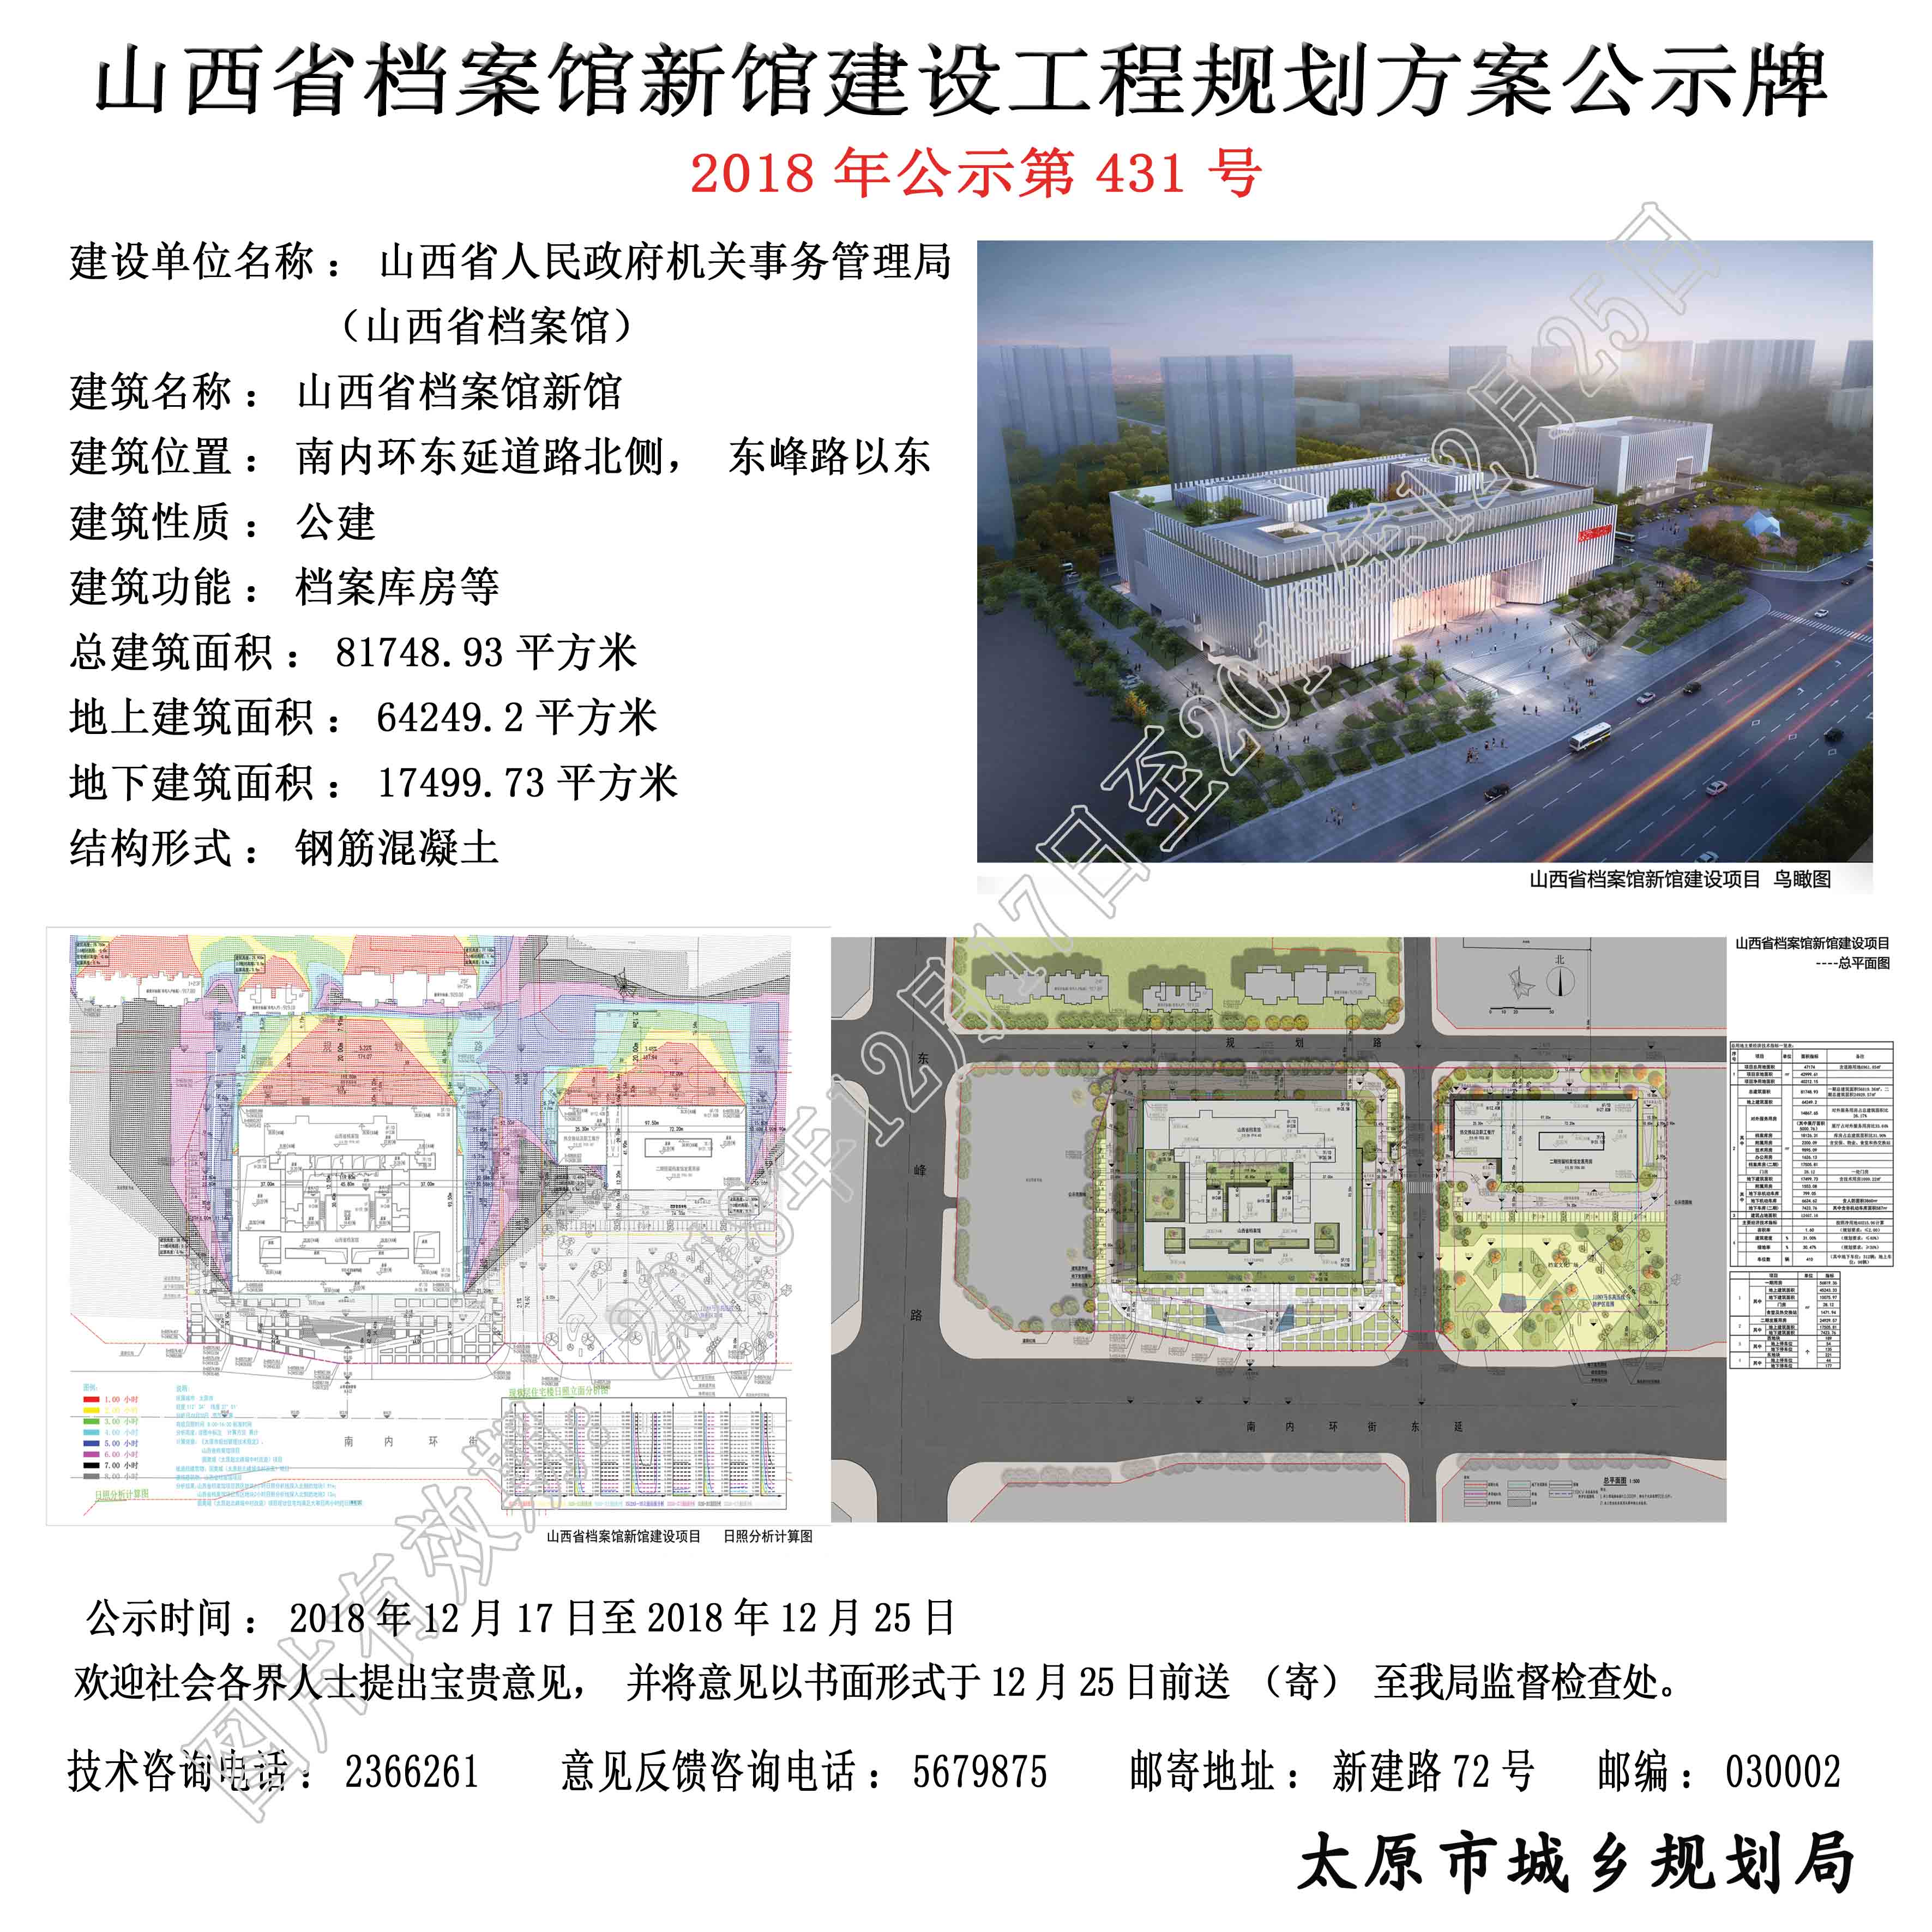 山西省档案馆将从朝阳街搬到南内环东延,配档案文化广场